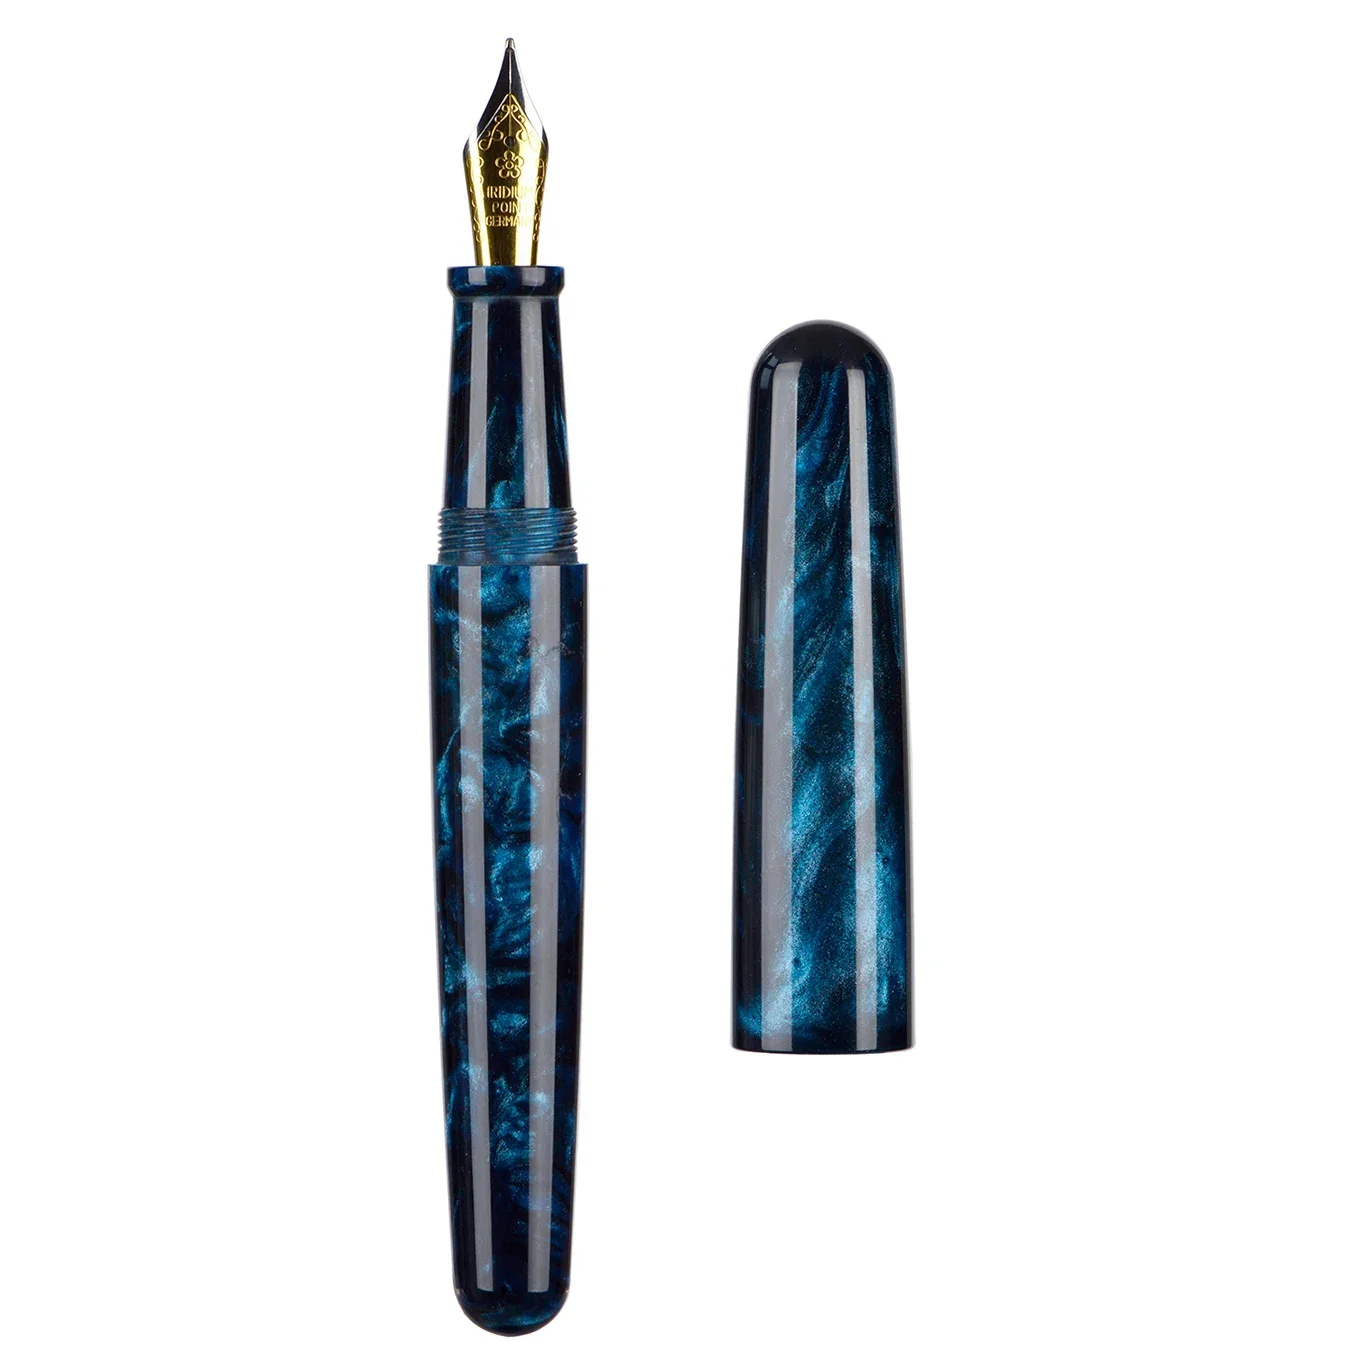 

Blue Black Fuliwen 017 Resin Acrylic Fountain Pen Big Size EF/F/M Beautiful Ink Pen Luxury Gift Pen for Office Business School